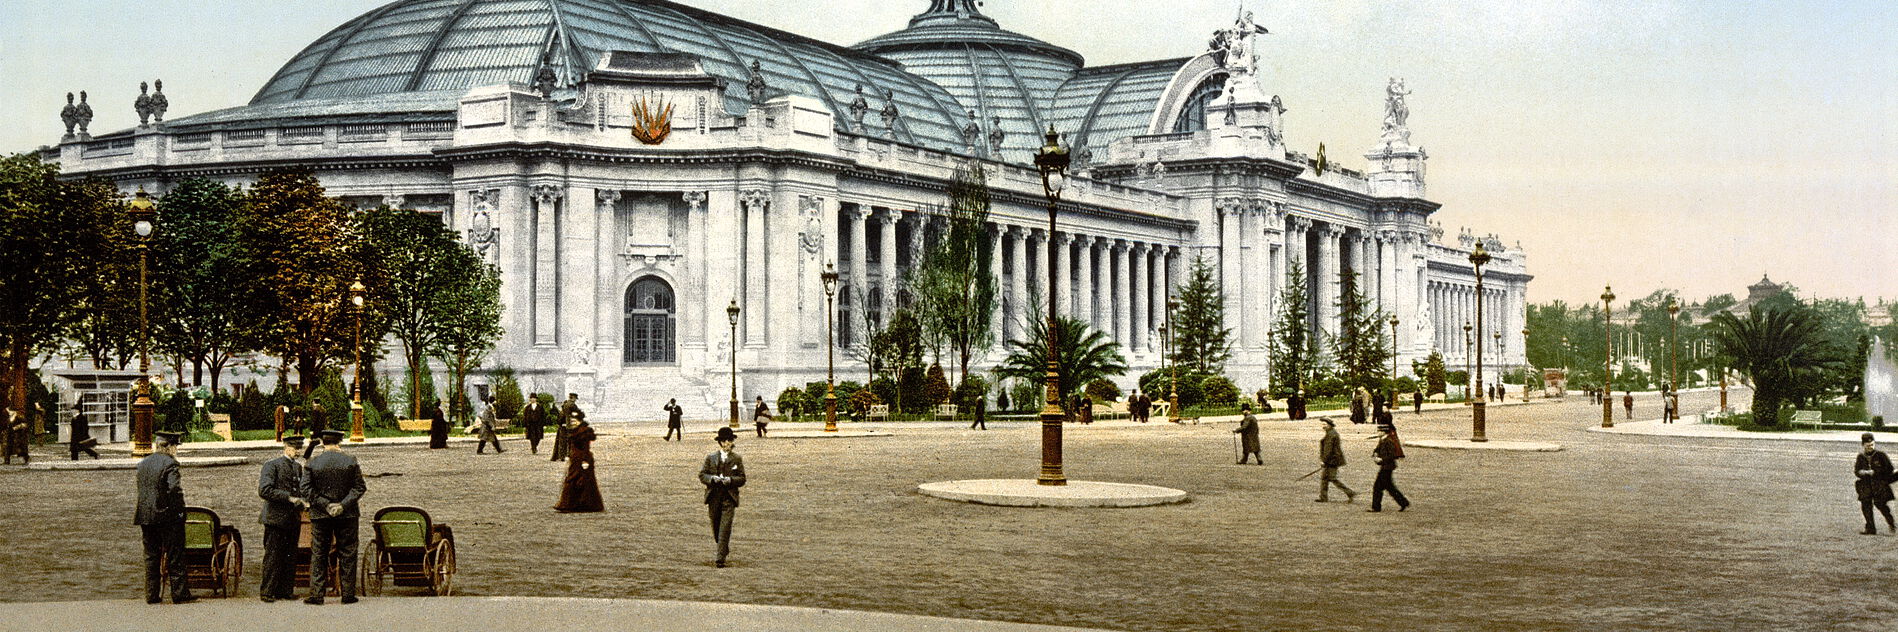 Grand Palais, Paris - Im Rahmen des "Salon d’Automne" nahm Georges Braque als auststellender Künstler teil